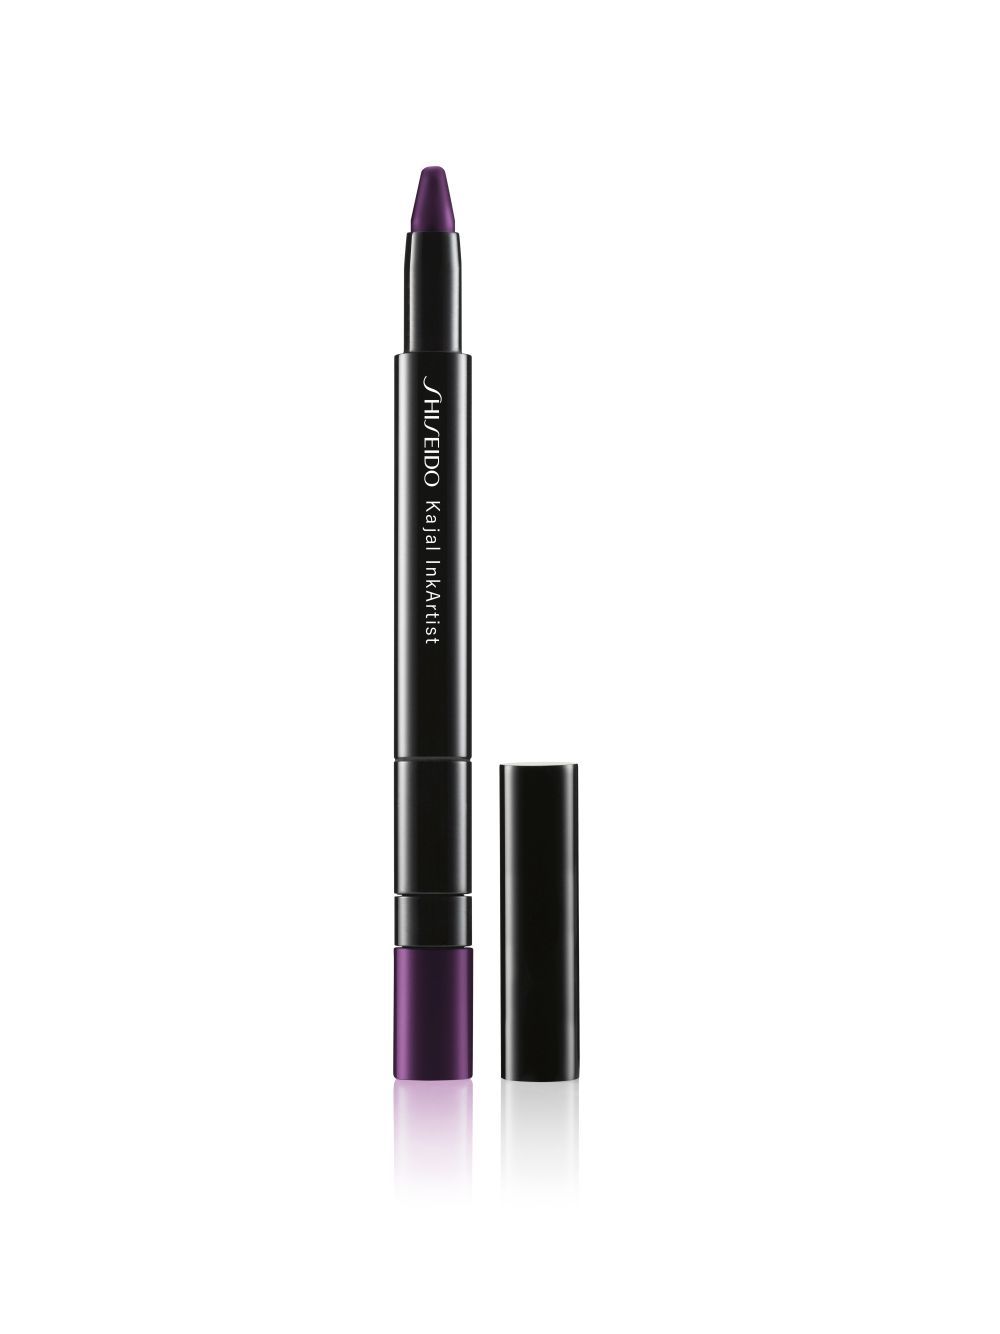 Delineador Kajal Inkartist, de Shiseido (27 euros) en tono violeta.